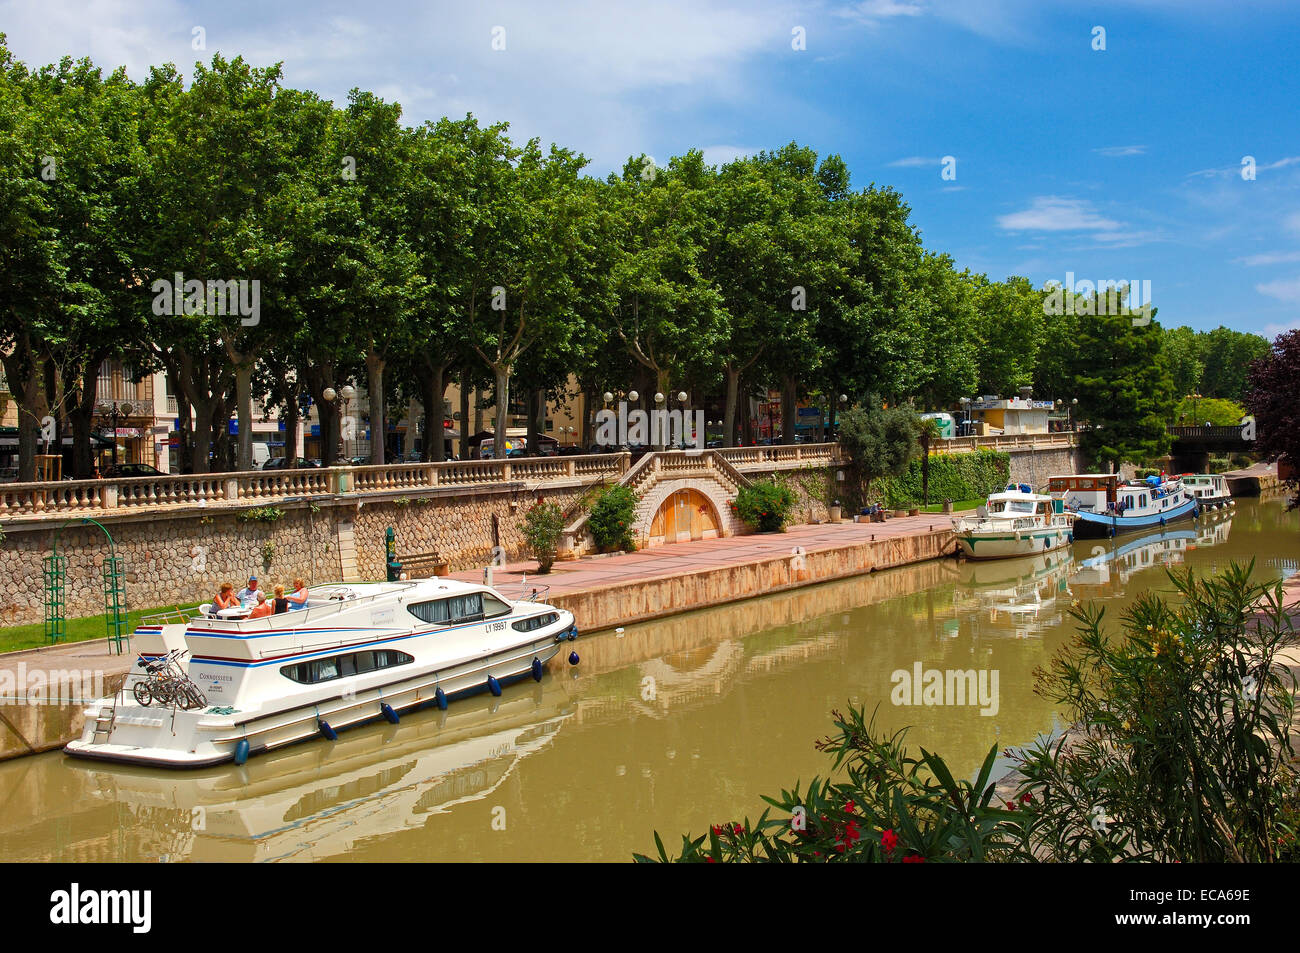 Canal de la Robine, Narbonne, Aude, Languedoc-Roussillon, France, Europe Stock Photo